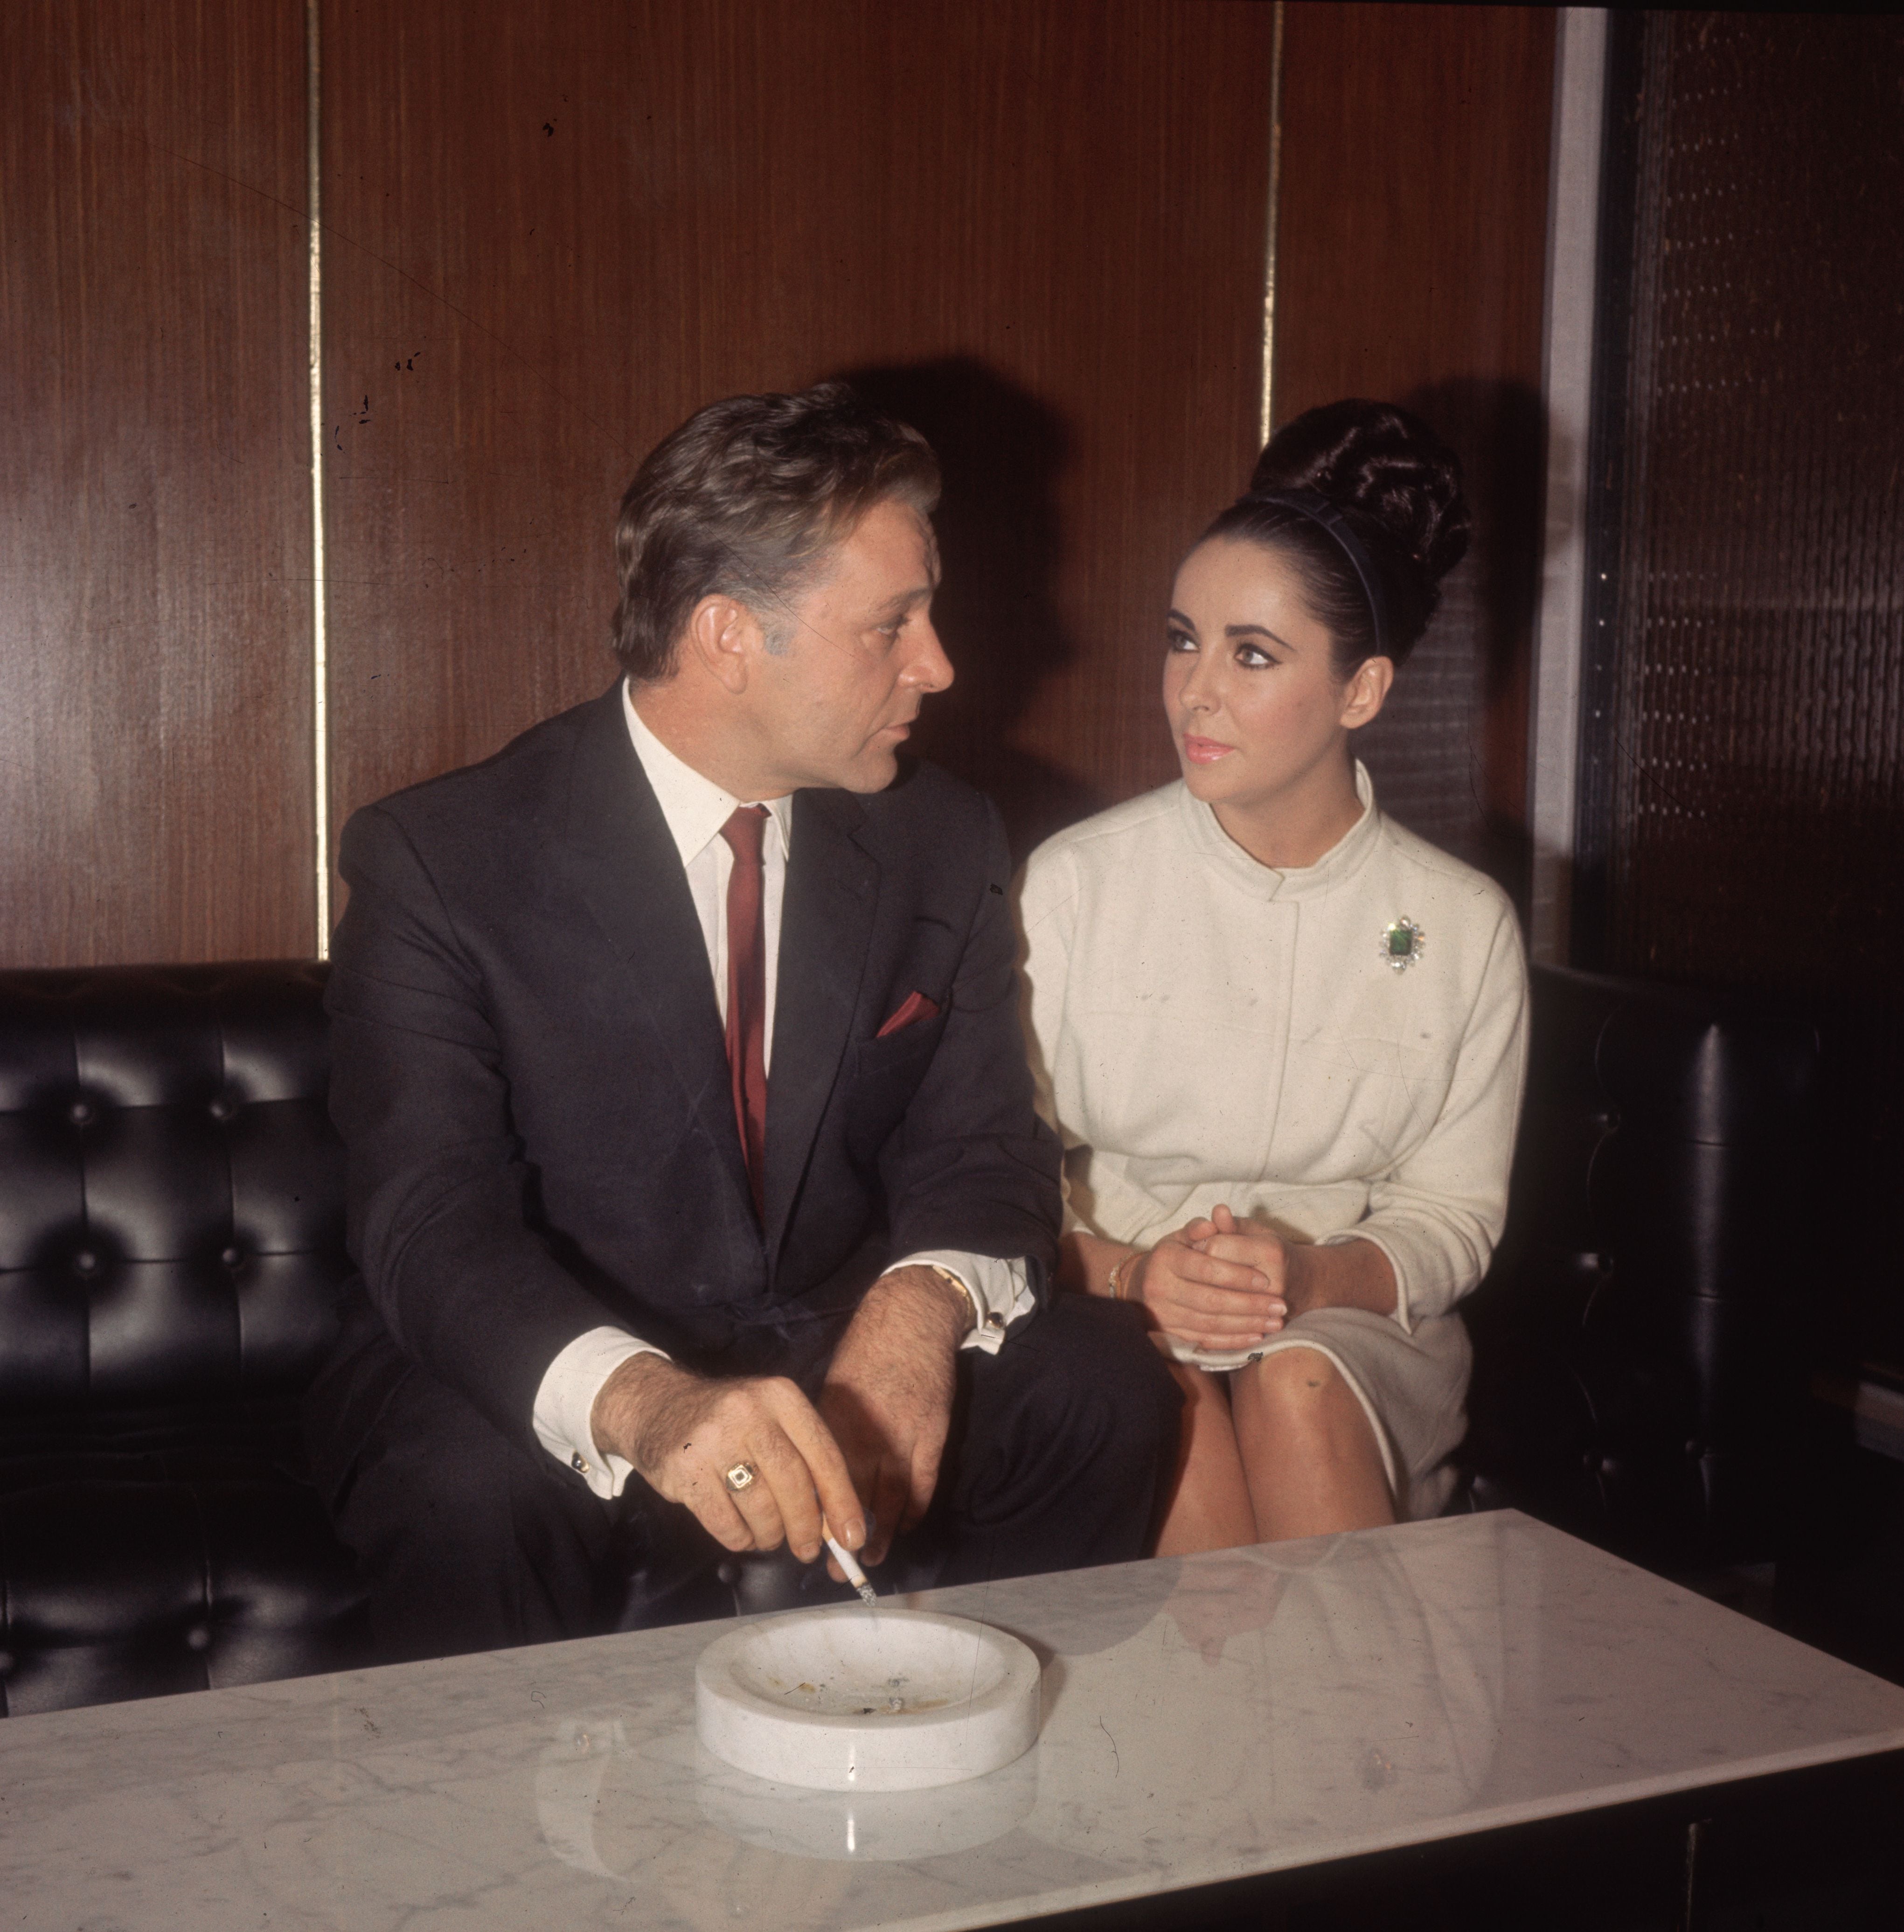 Richard Burton e Elizabeth Taylor, aqui fotografados em Londres em 1962, não foram o primeiro casal de Hollywood que suscitava interesse, mas sim o primeiro a se transformar em um fenômeno lucrativo dentro e fora das telas que fascinava a imprensa e o público.